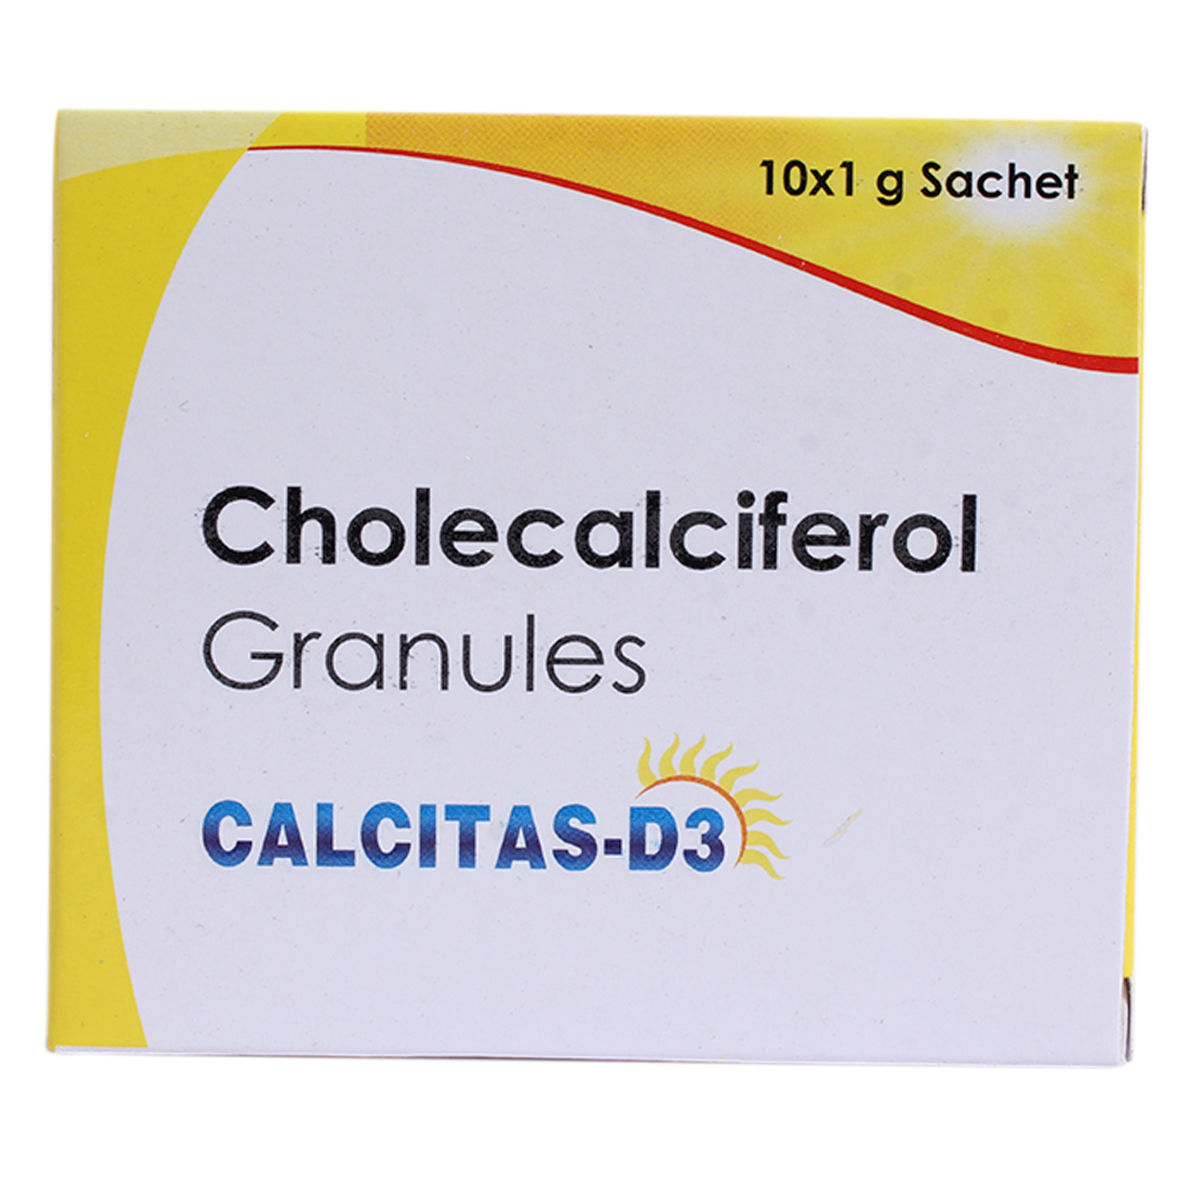 Buy Calcitas-D3 Granules 1 gm Online